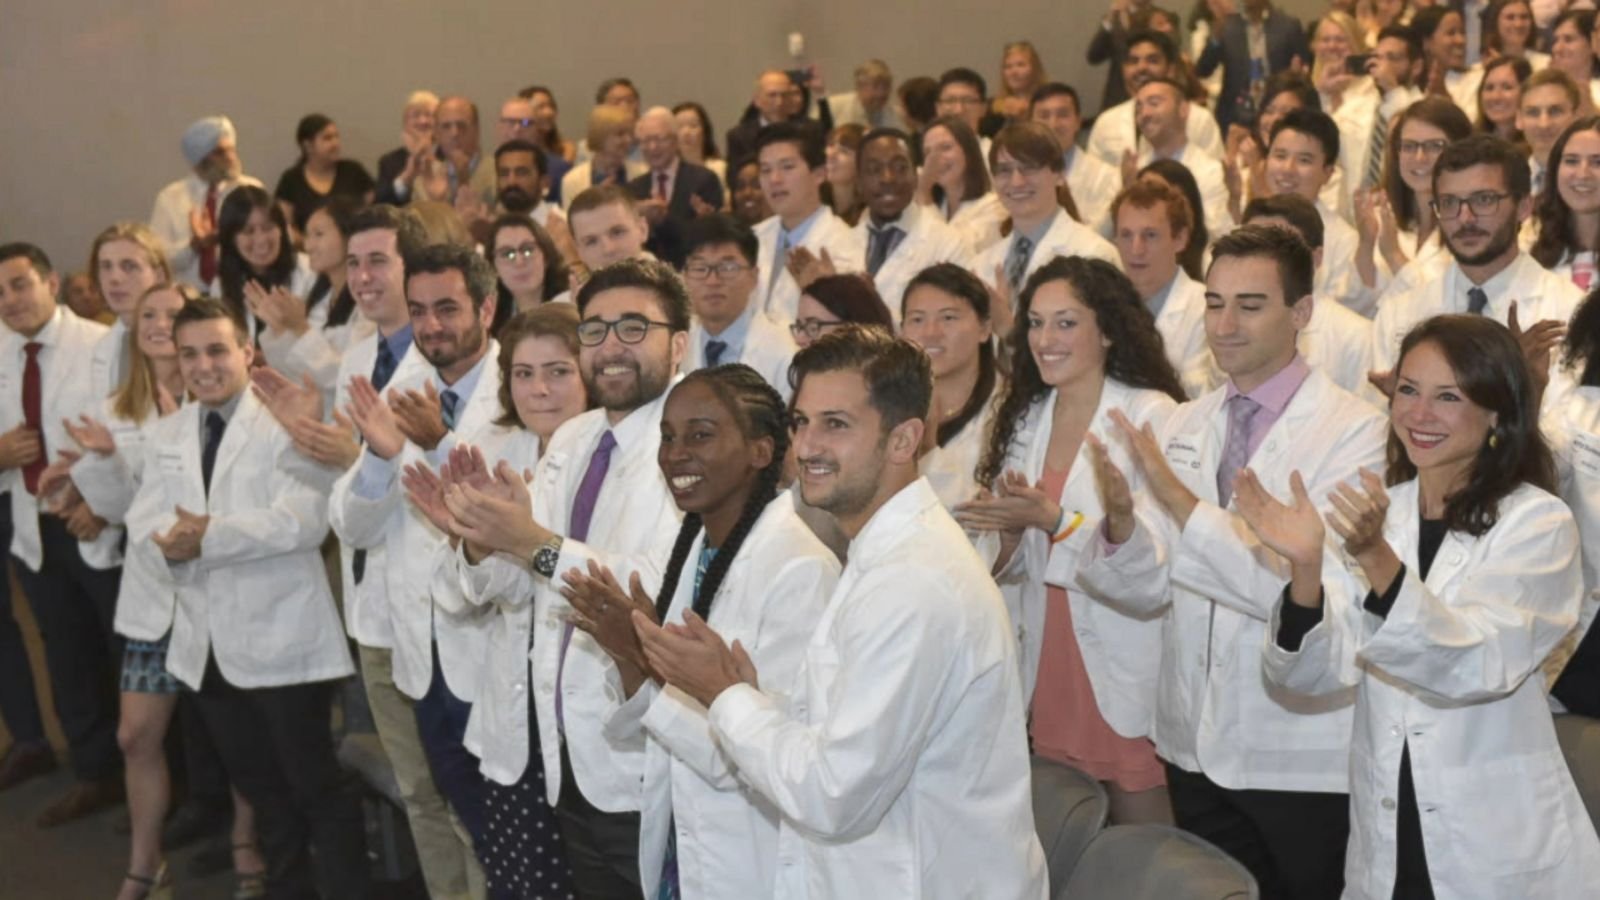  Prestigioasa facultate de medicină din cadrul Universităţii din New York va fi gratuită